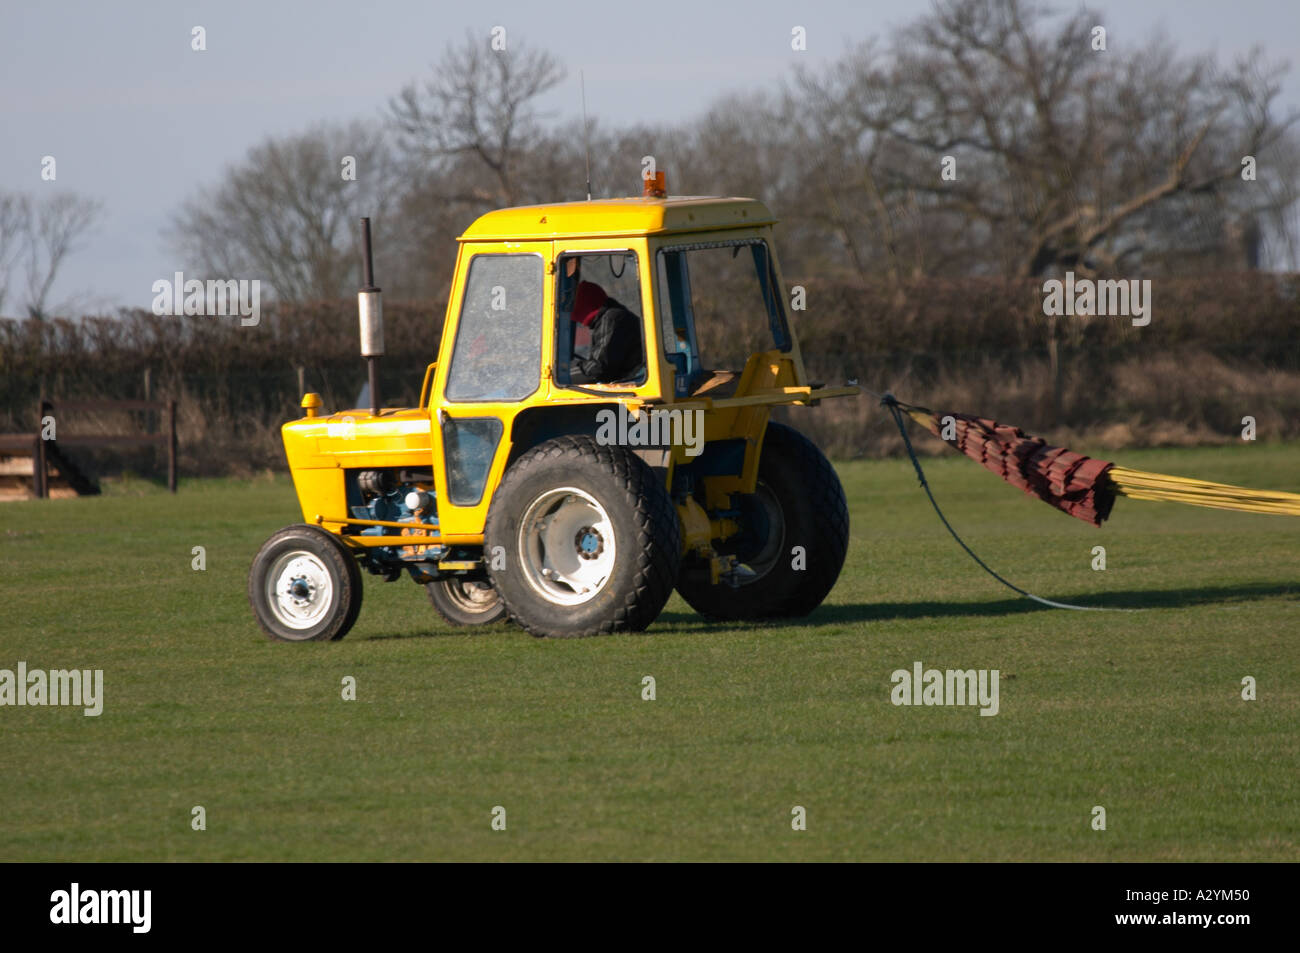 Gelbe Traktor Abschleppen ein Seil Stockfotografie - Alamy